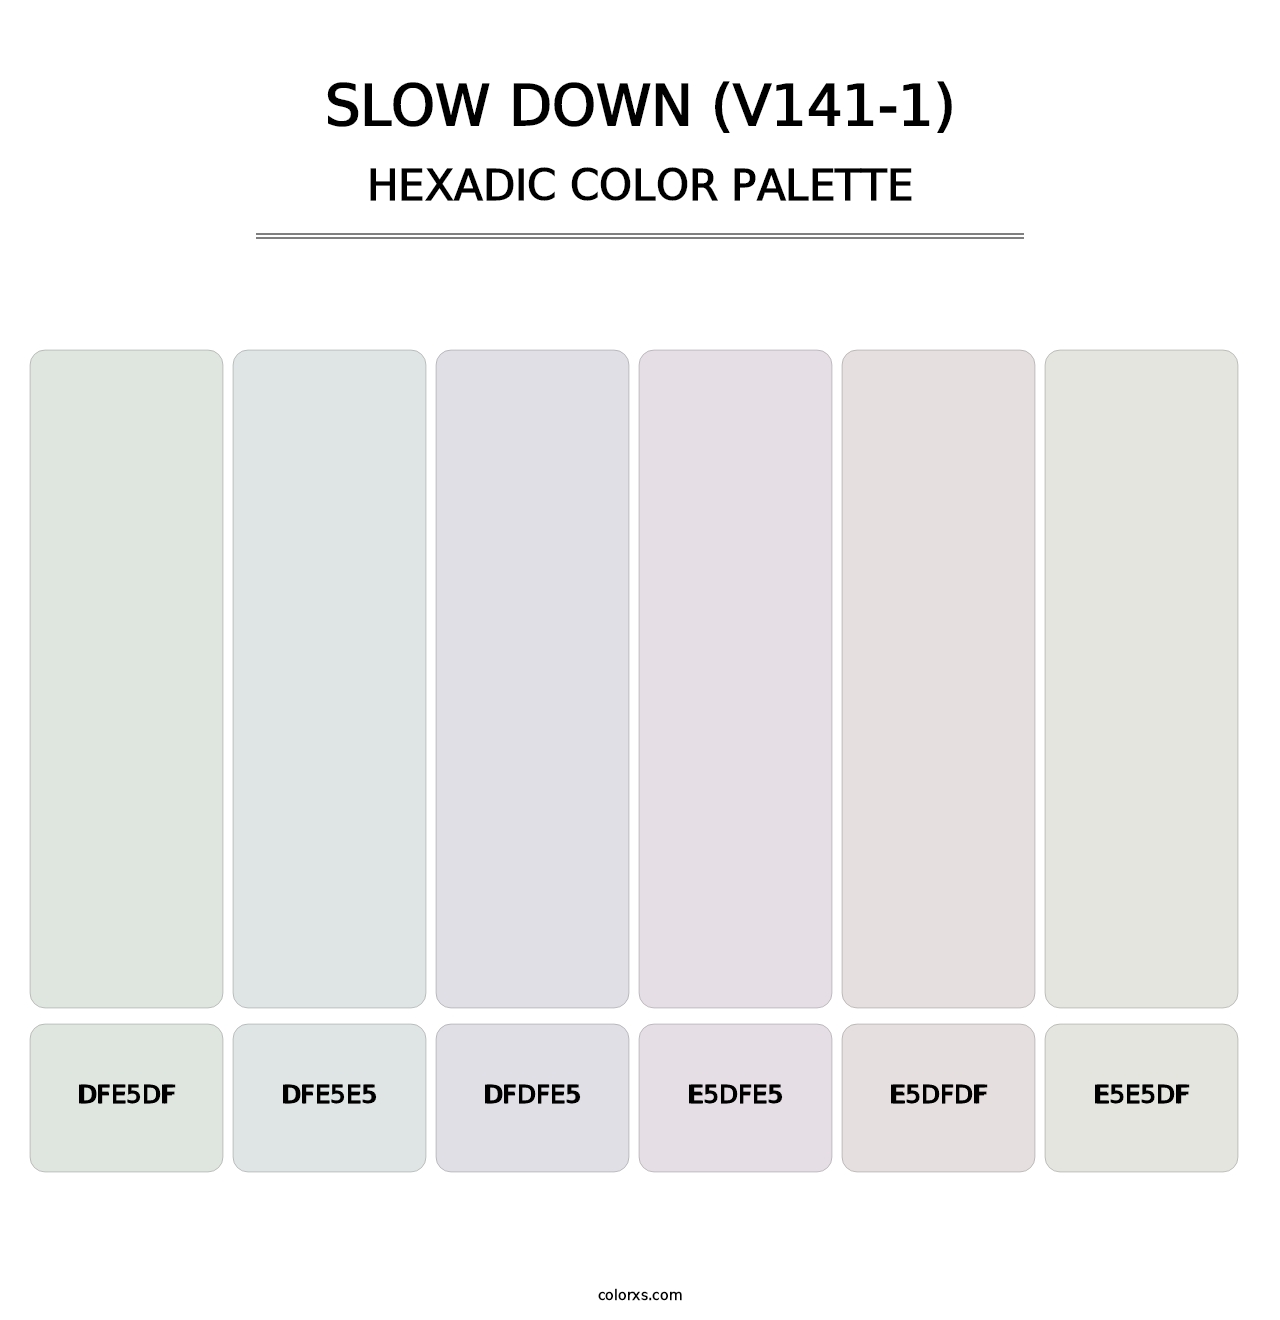 Slow Down (V141-1) - Hexadic Color Palette